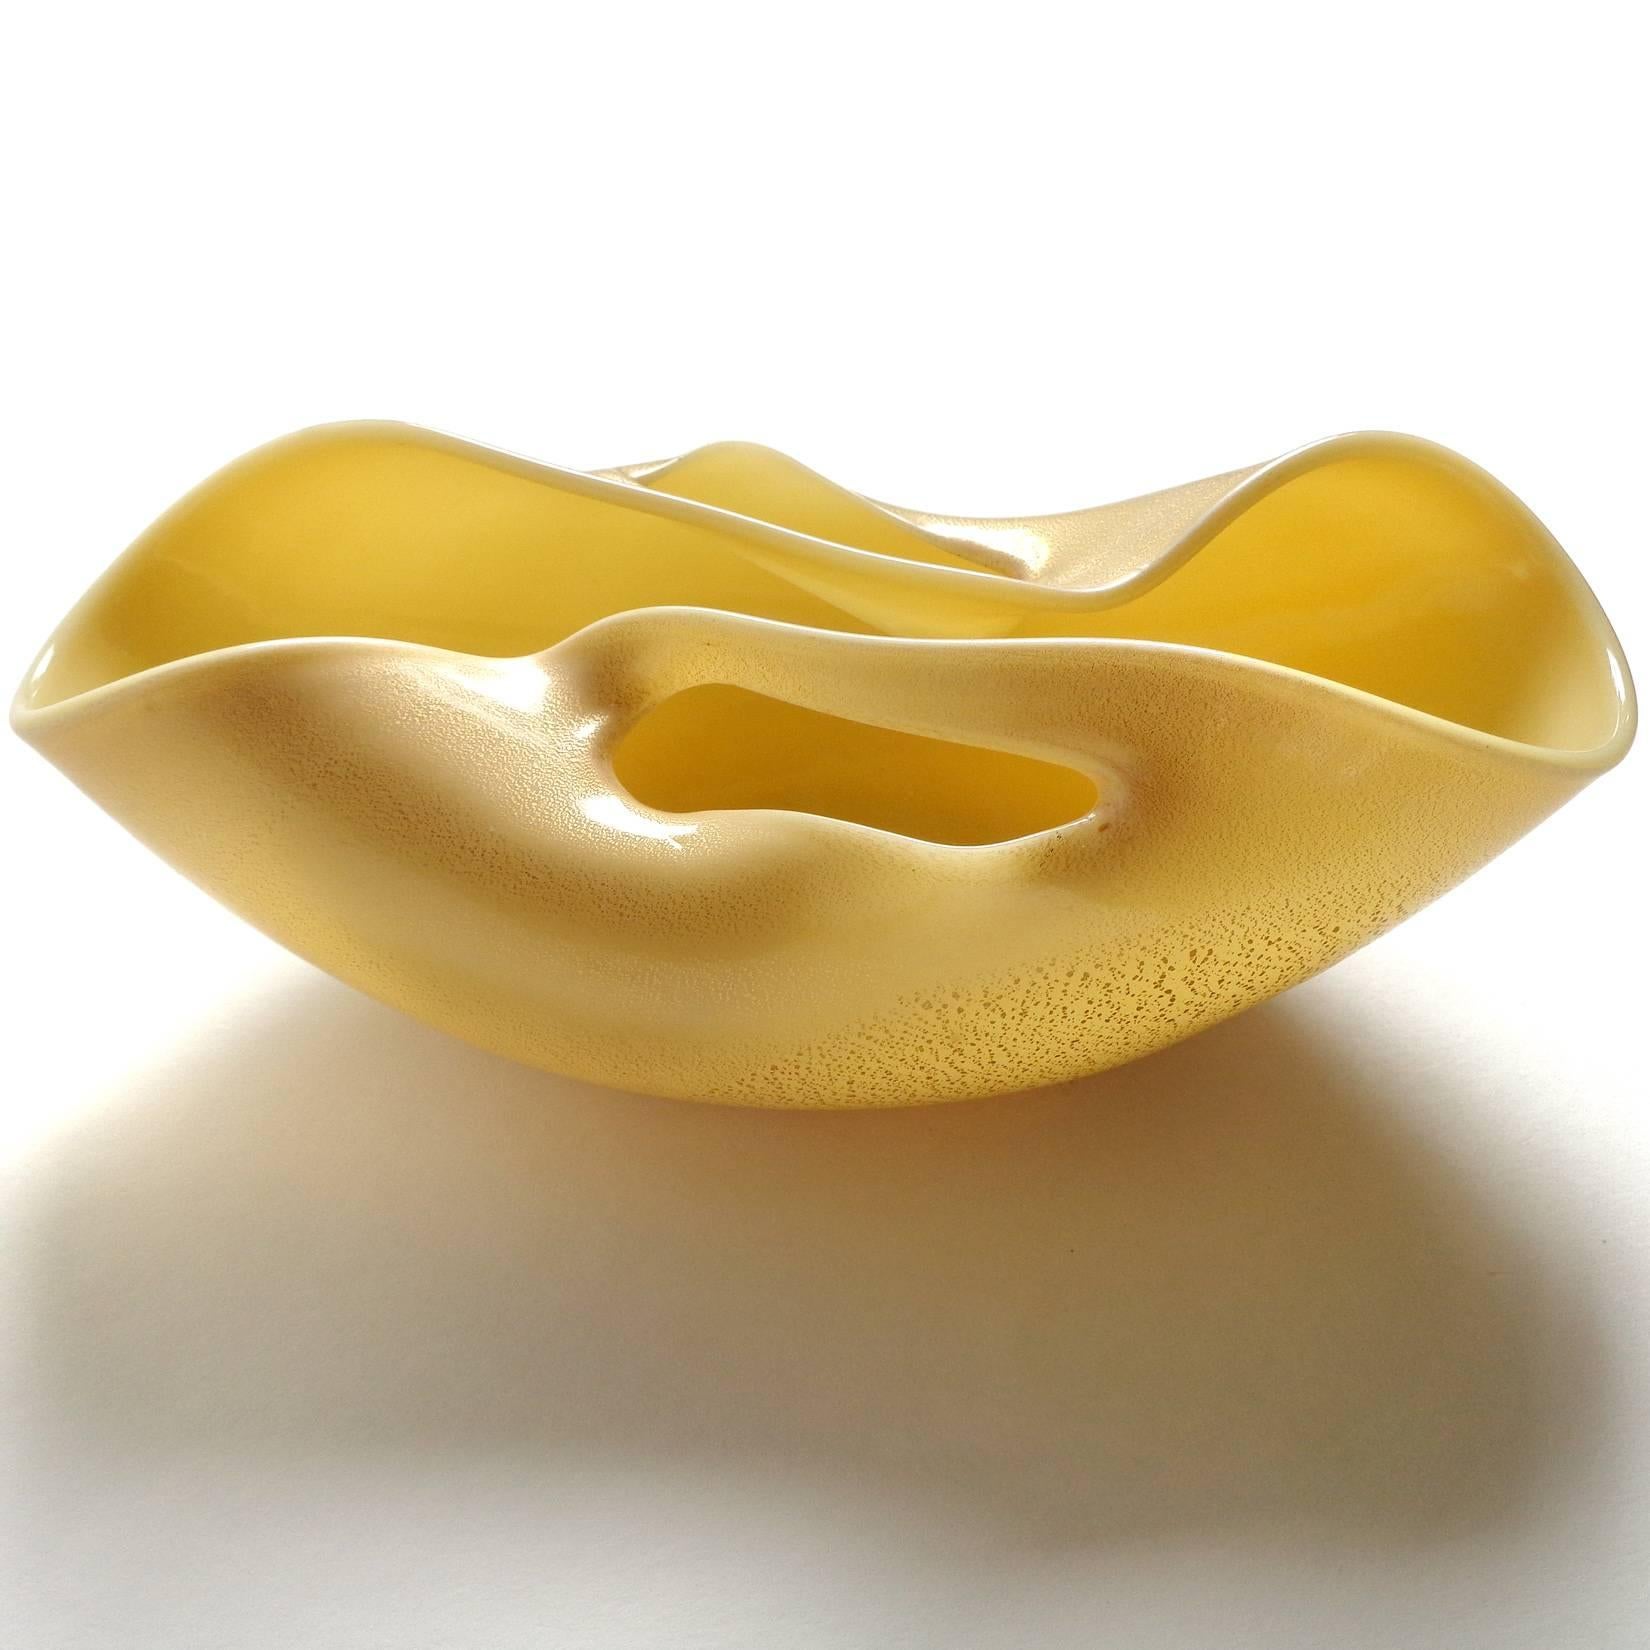 Schöne und seltene, Vintage Murano mundgeblasenen gelben und goldenen Flecken Kunstglas skulpturale Schale. Dem Designer Archimede Seguso zugeschrieben und in seinem Buch 